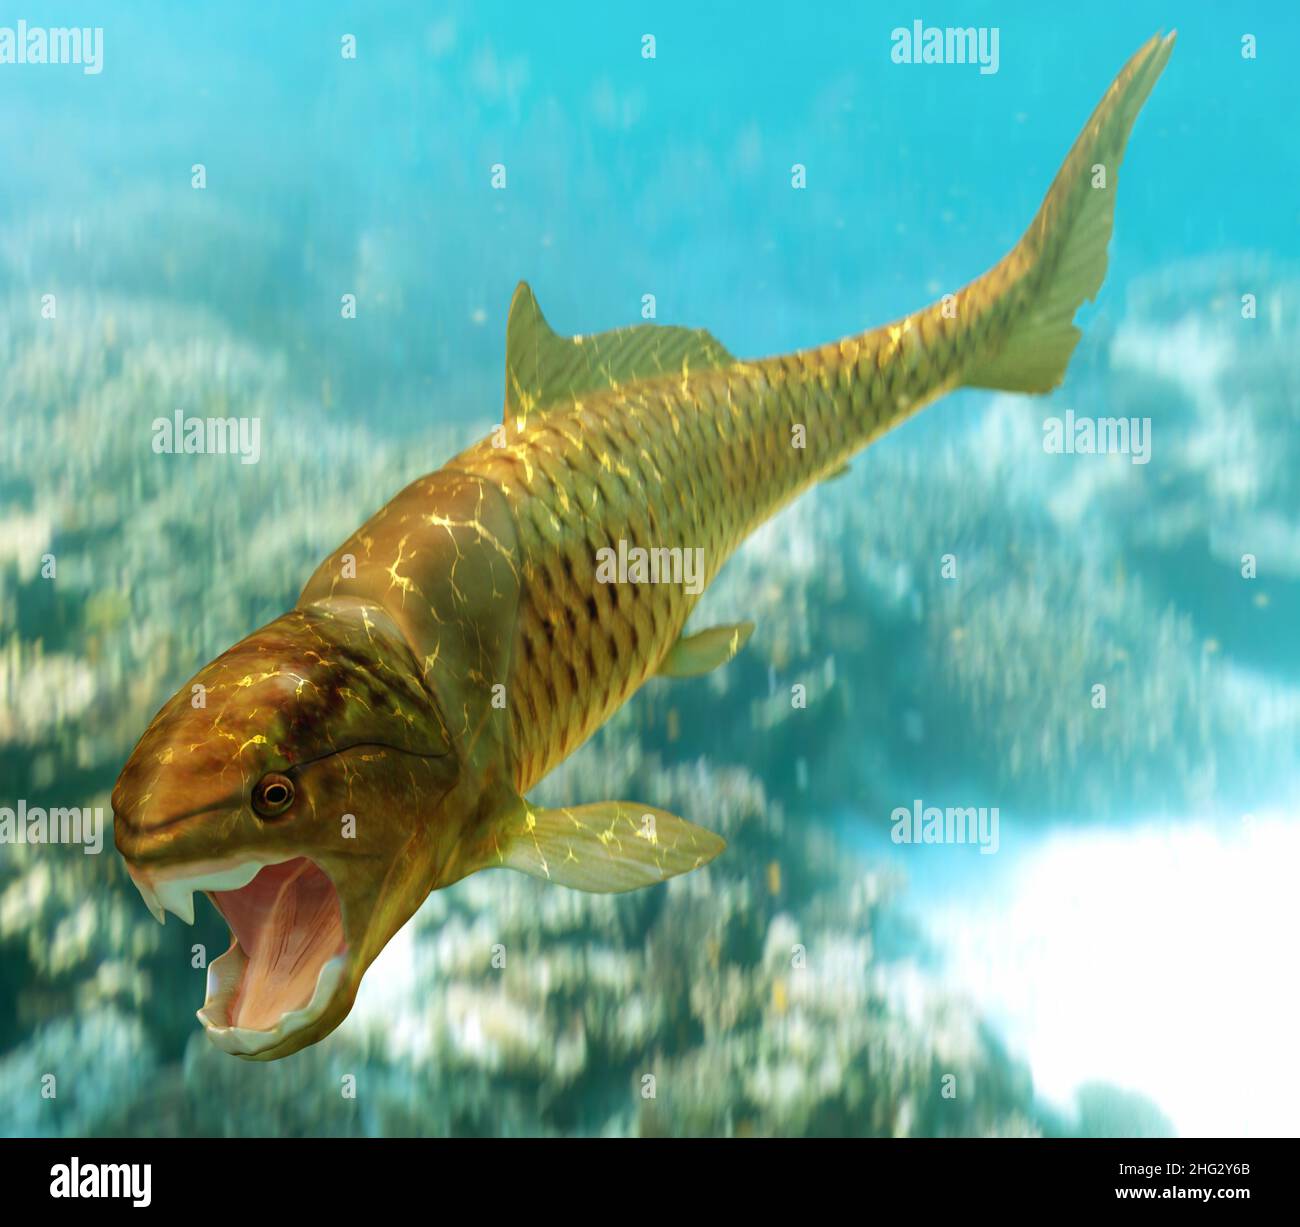 Dunkleosteus è un genere di pesci preistorici giganti che esistono circa 380 - 360 milioni di anni fa. Foto Stock